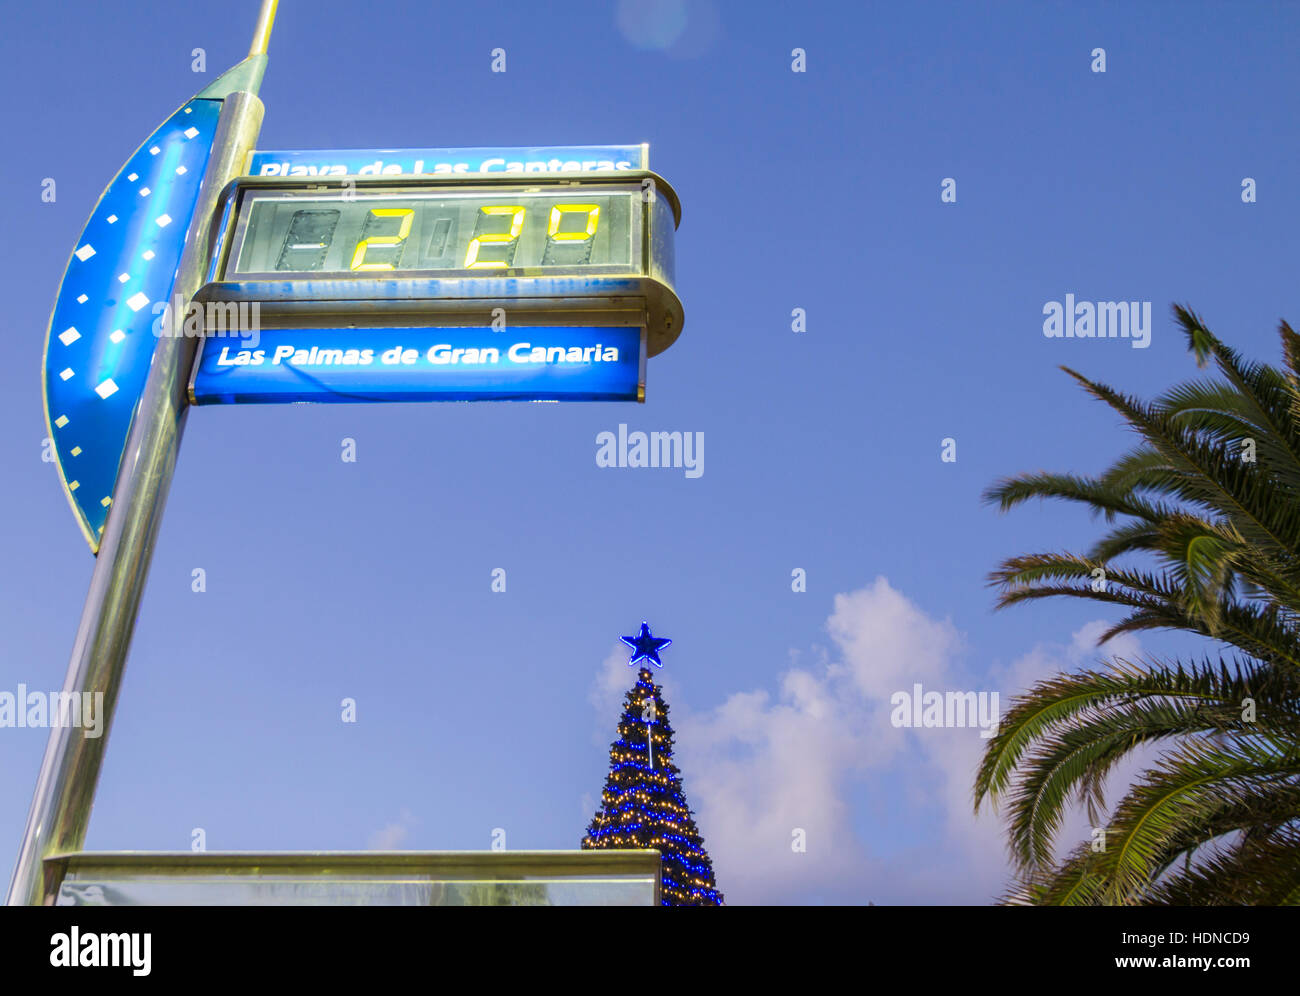 Las Palmas, Gran Canaria, Kanarische Inseln, Spanien. 14. Dezember 2016.  Wetter: Einen lauen 22 Grad Celsius in der Dämmerung als Weihnachtsbaum  Lichter der Stadt-Strand in Las Palmas, der Hauptstadt von Gran Canaria